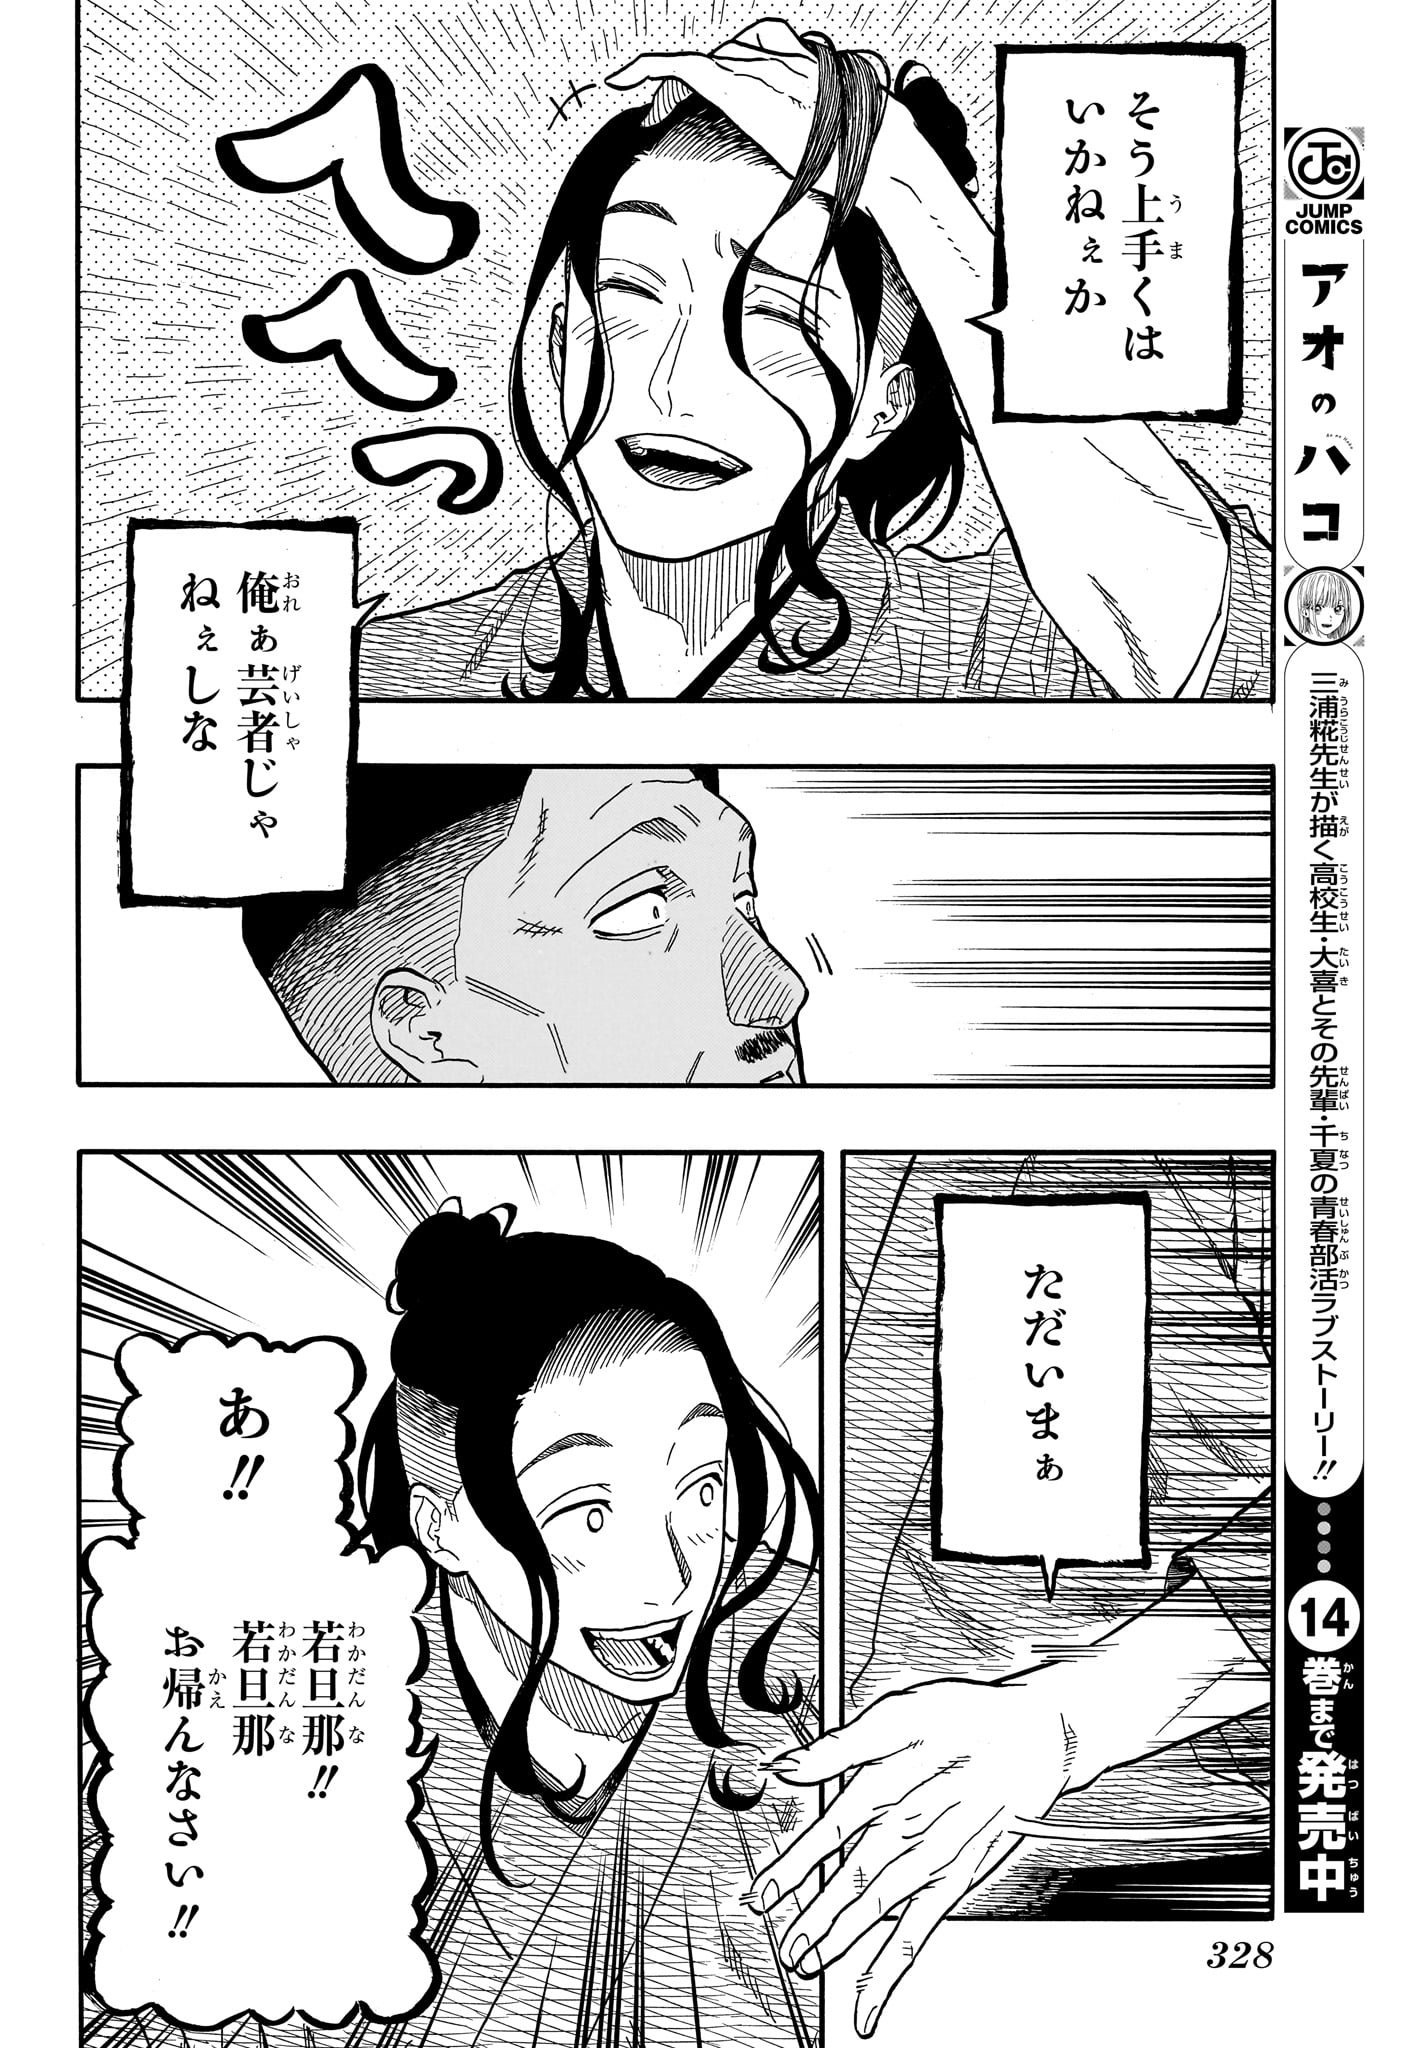 Akane-Banashi - Chapter 111 - Page 10